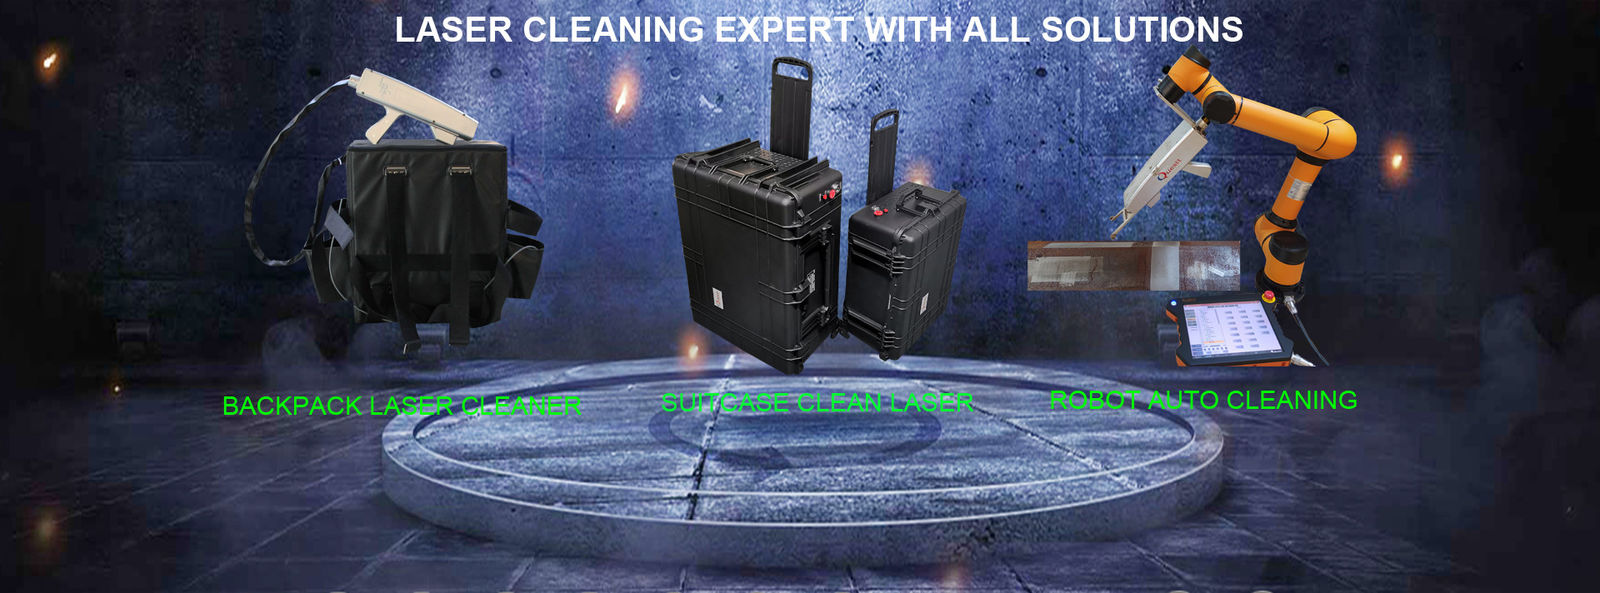 calidad Máquina de la limpieza del laser Servicio